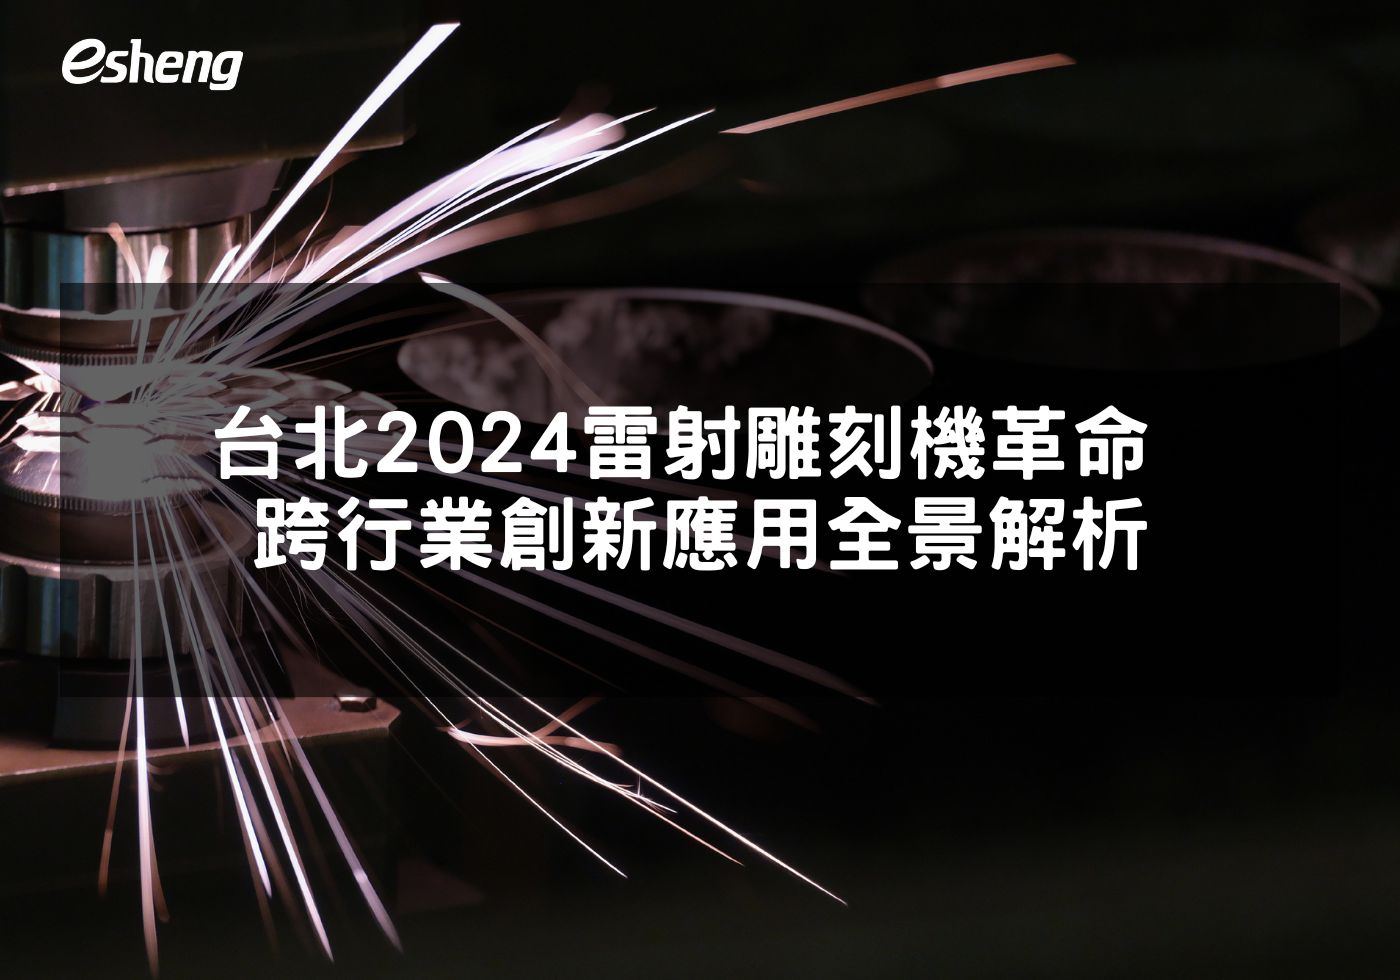 台北2024雷射雕刻機革命 跨行業創新應用全景解析